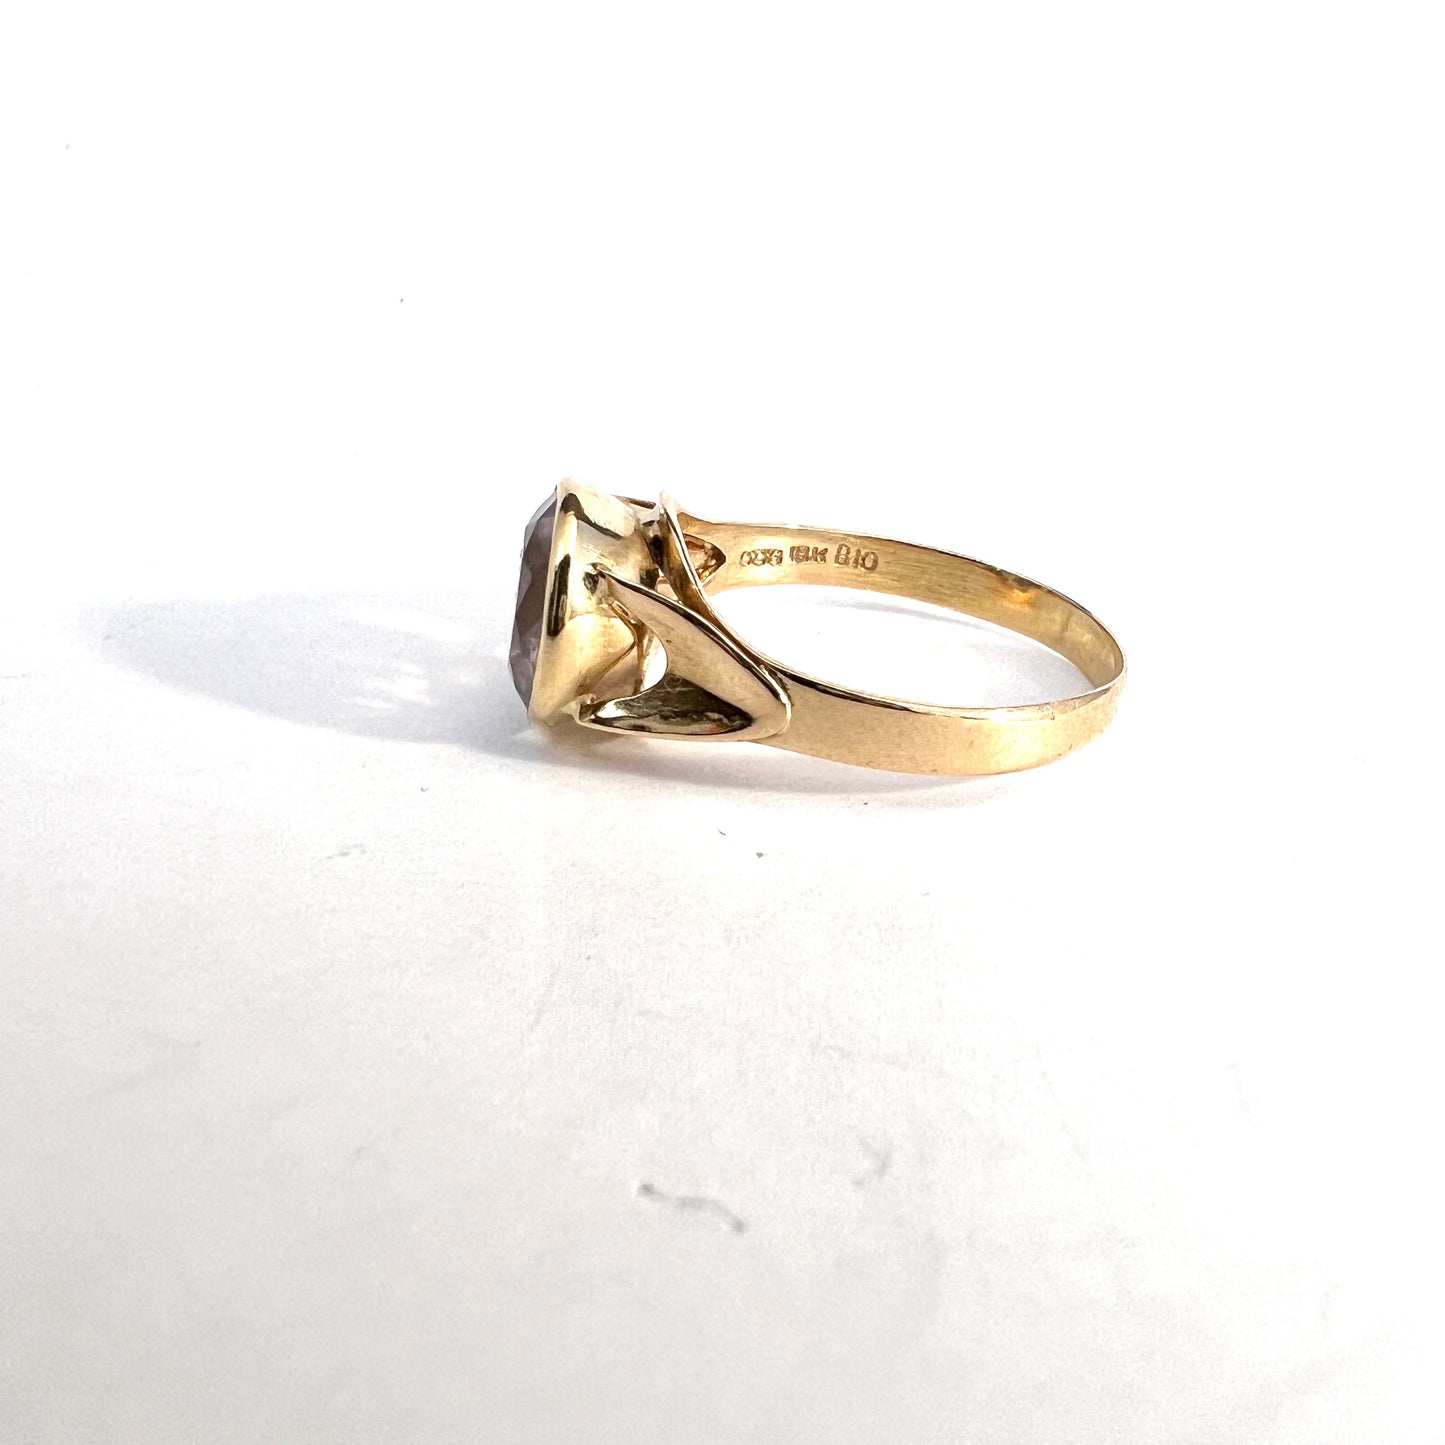 Örneus, Sweden 1976. Vintage 18k Gold Pale Amethyst Ring.